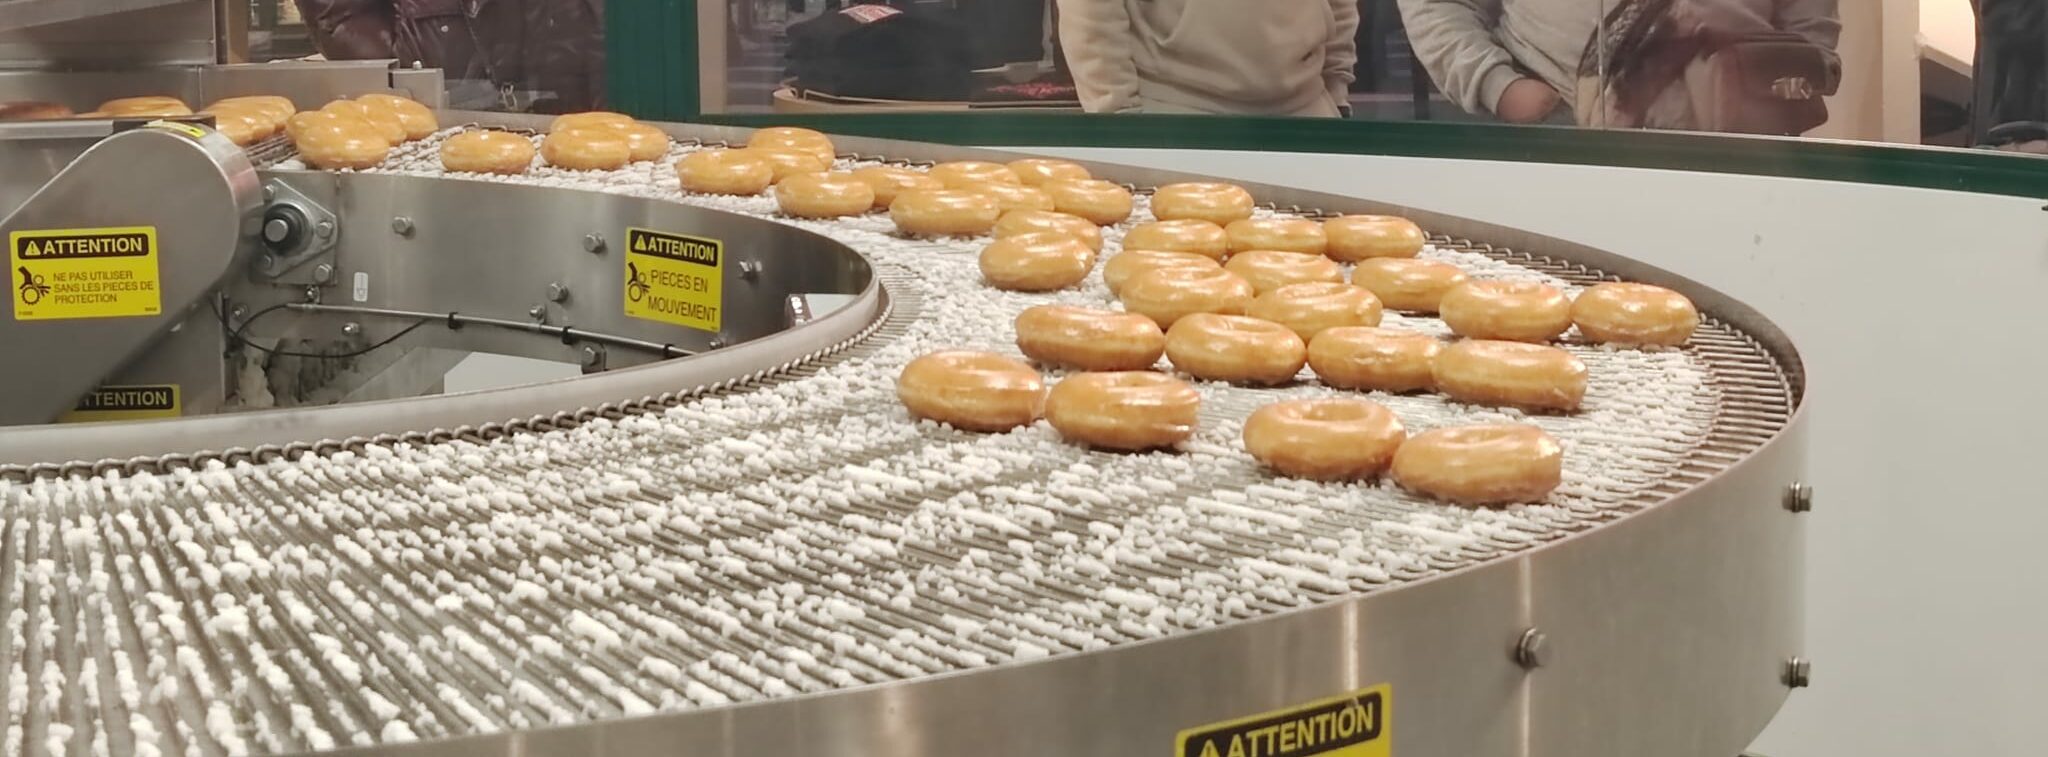 Chaîne de production Krispy Kreme au Forum des Halles